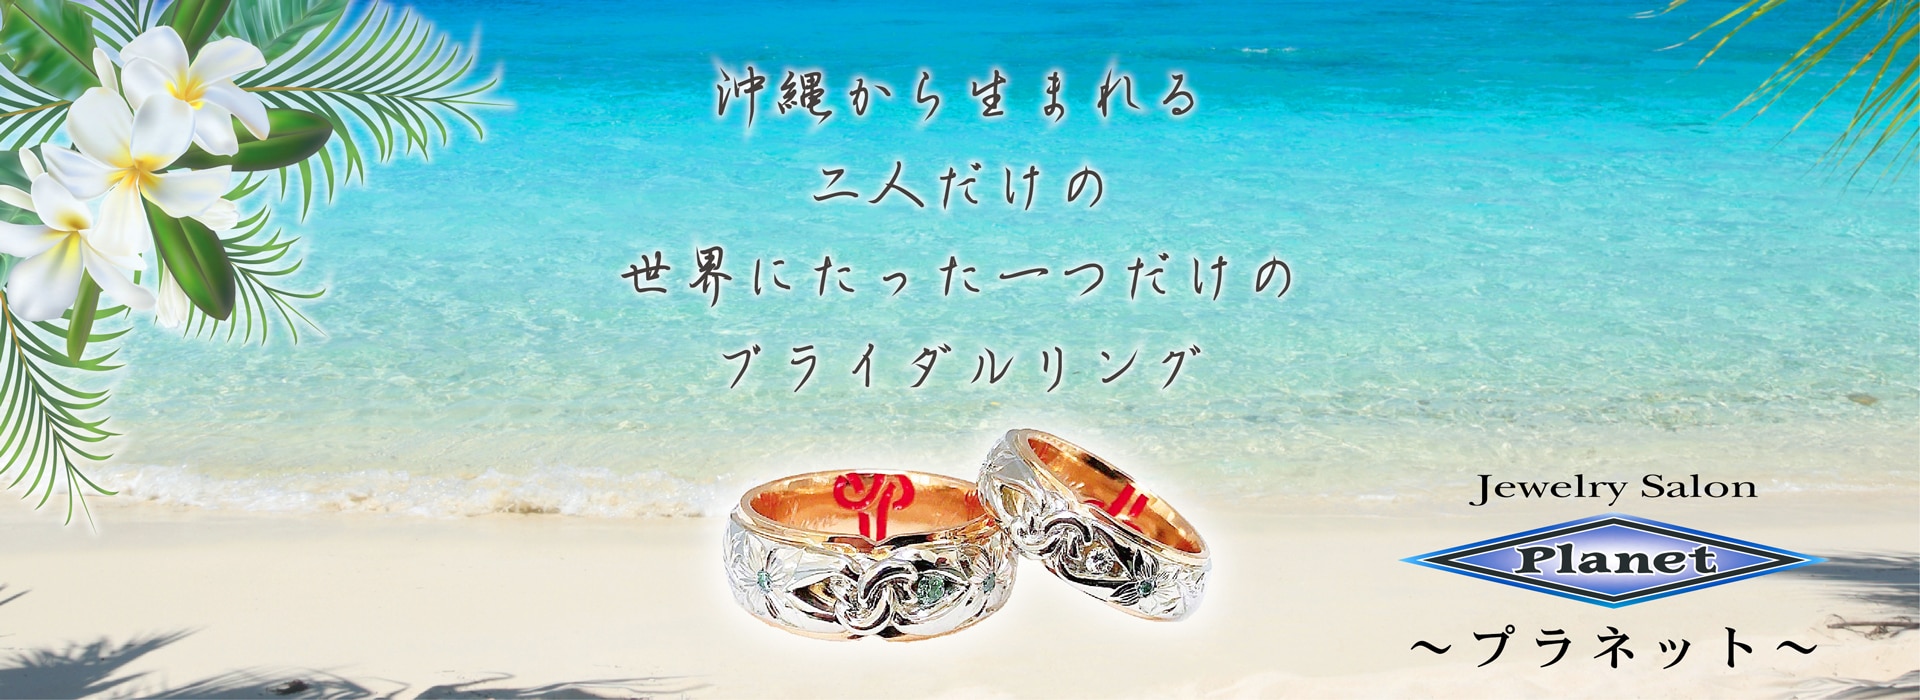 沖縄のジュエリーショップ「JewelrySalonPlanet」